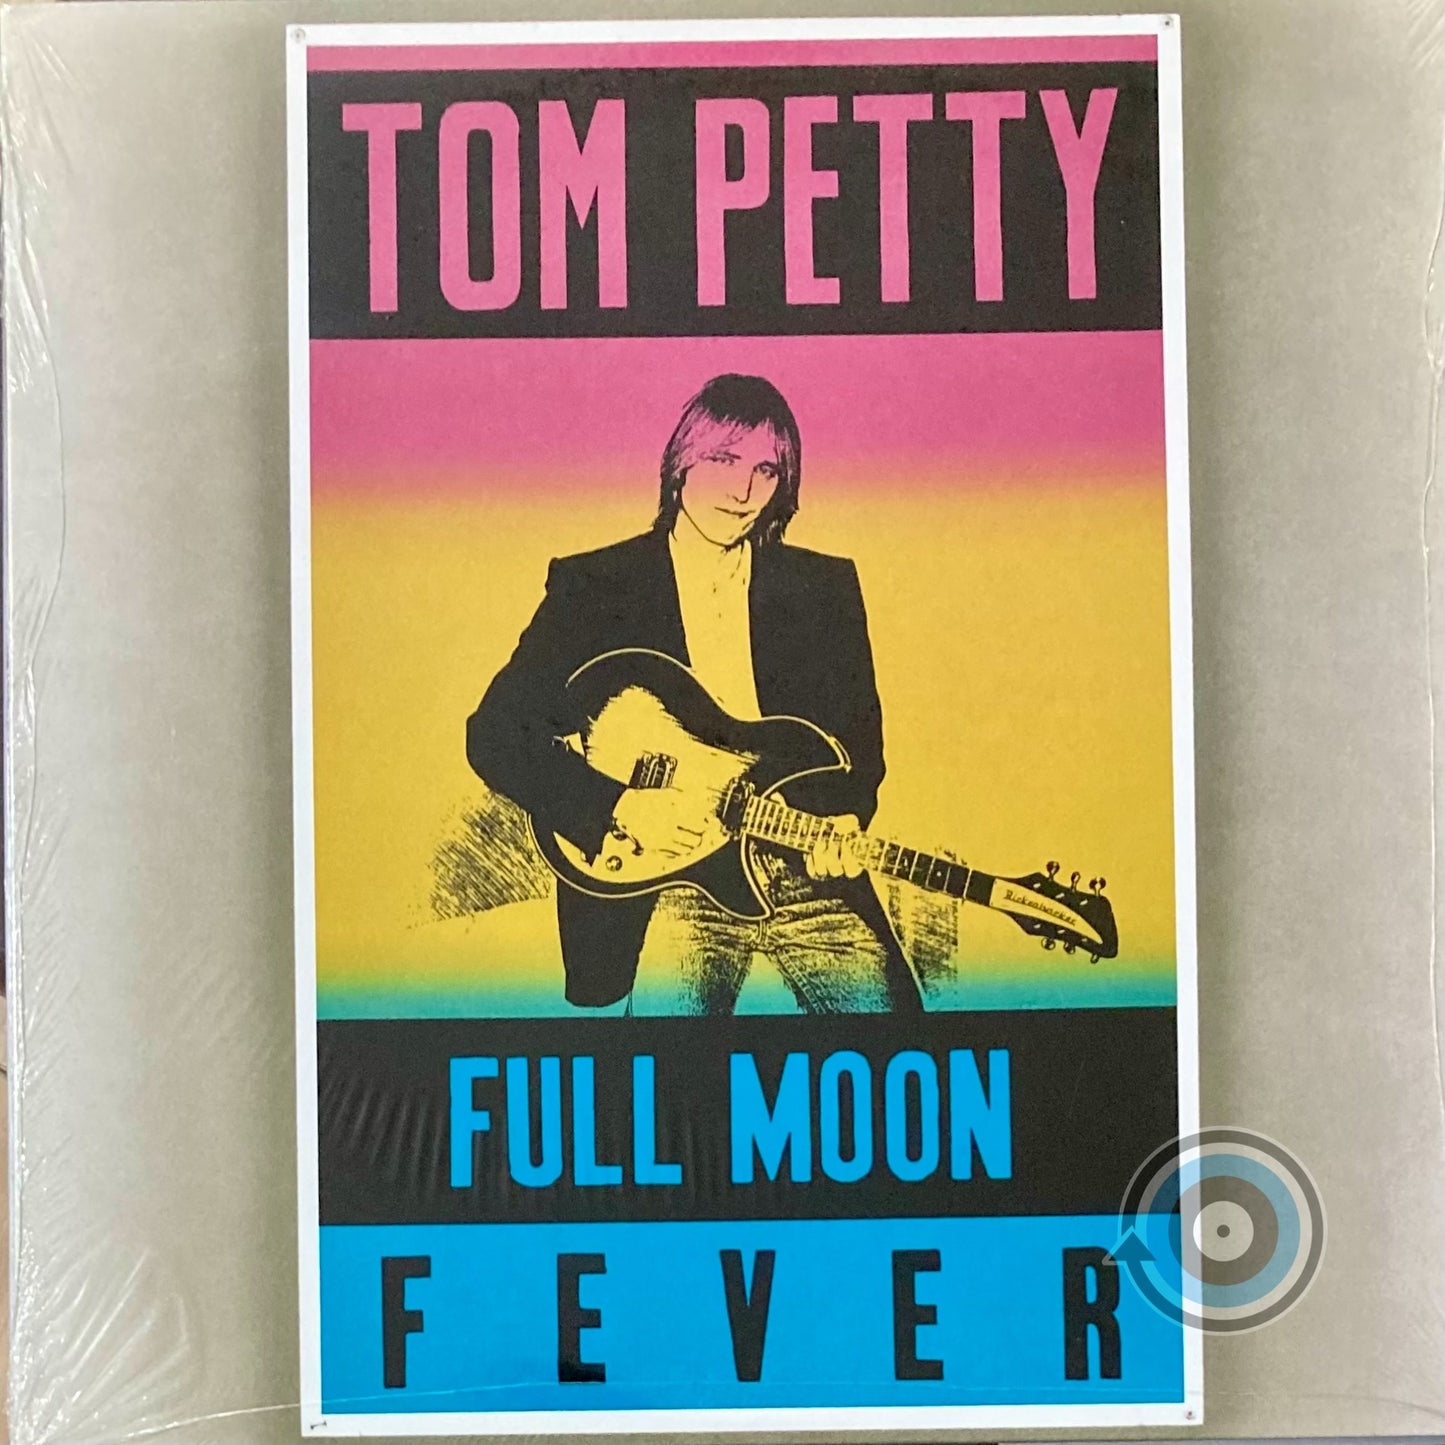 Tom Petty - Full Moon Fever LP (Sealed)